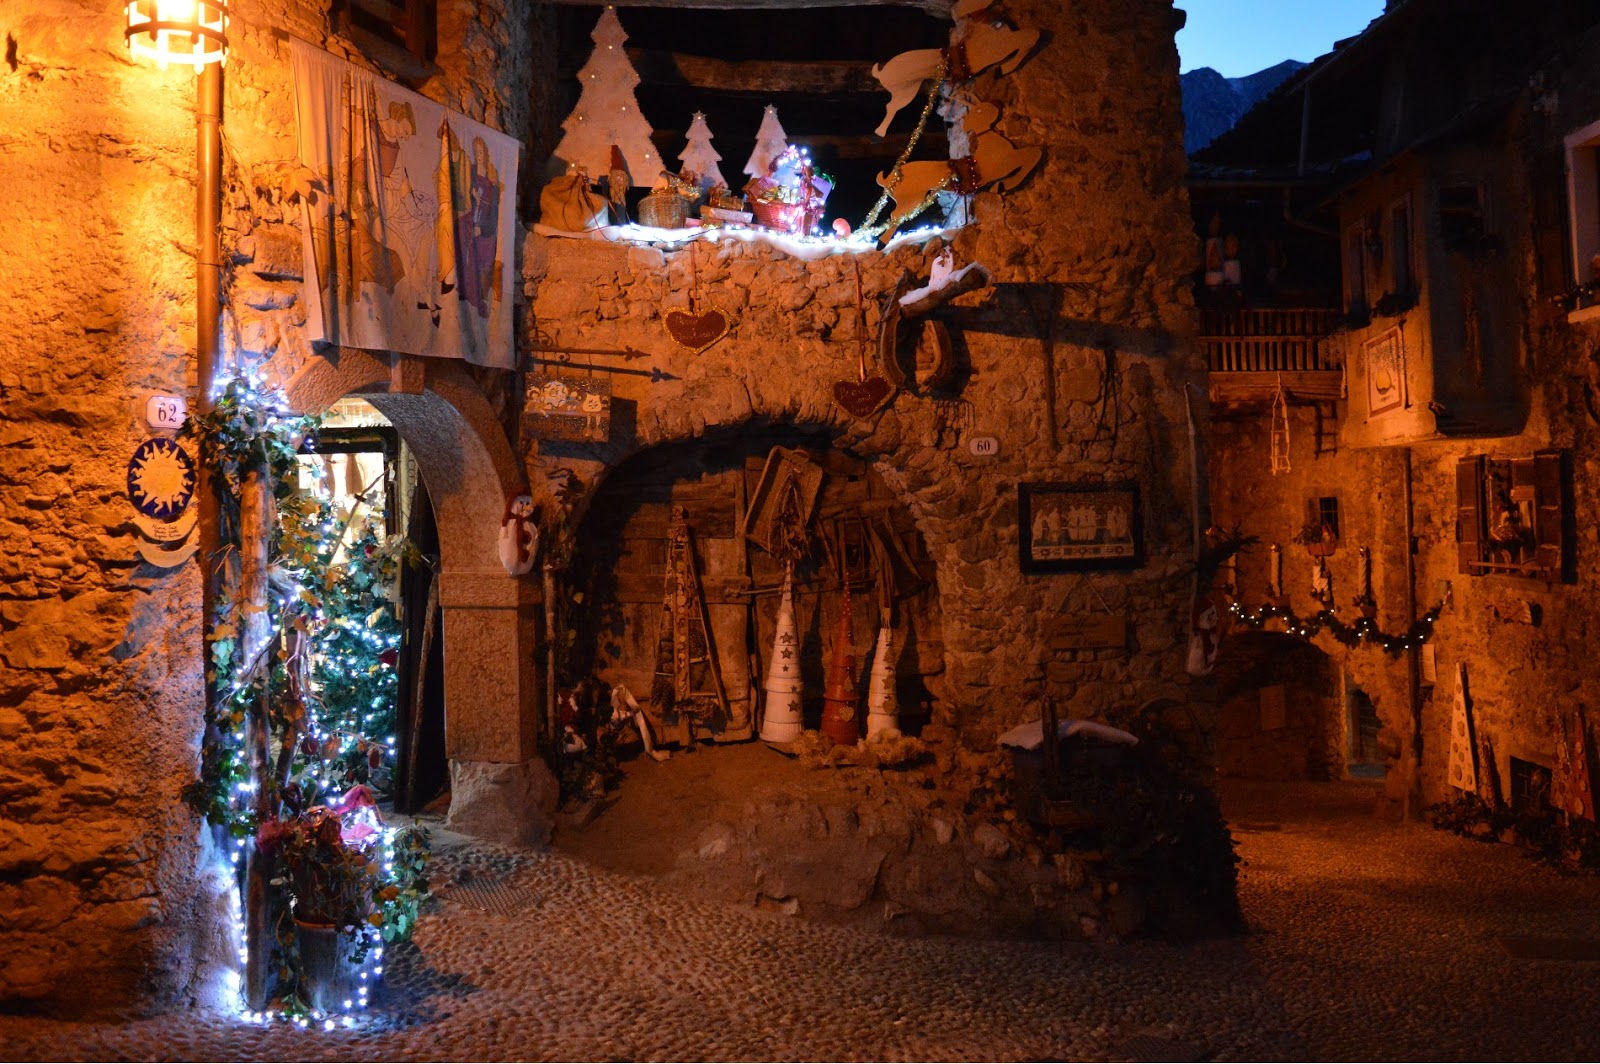 Mercatini Di Natale Tenno.Mercatini Di Natale Di Arco E Canale Di Tenno In Trentino Montagna Di Viaggi